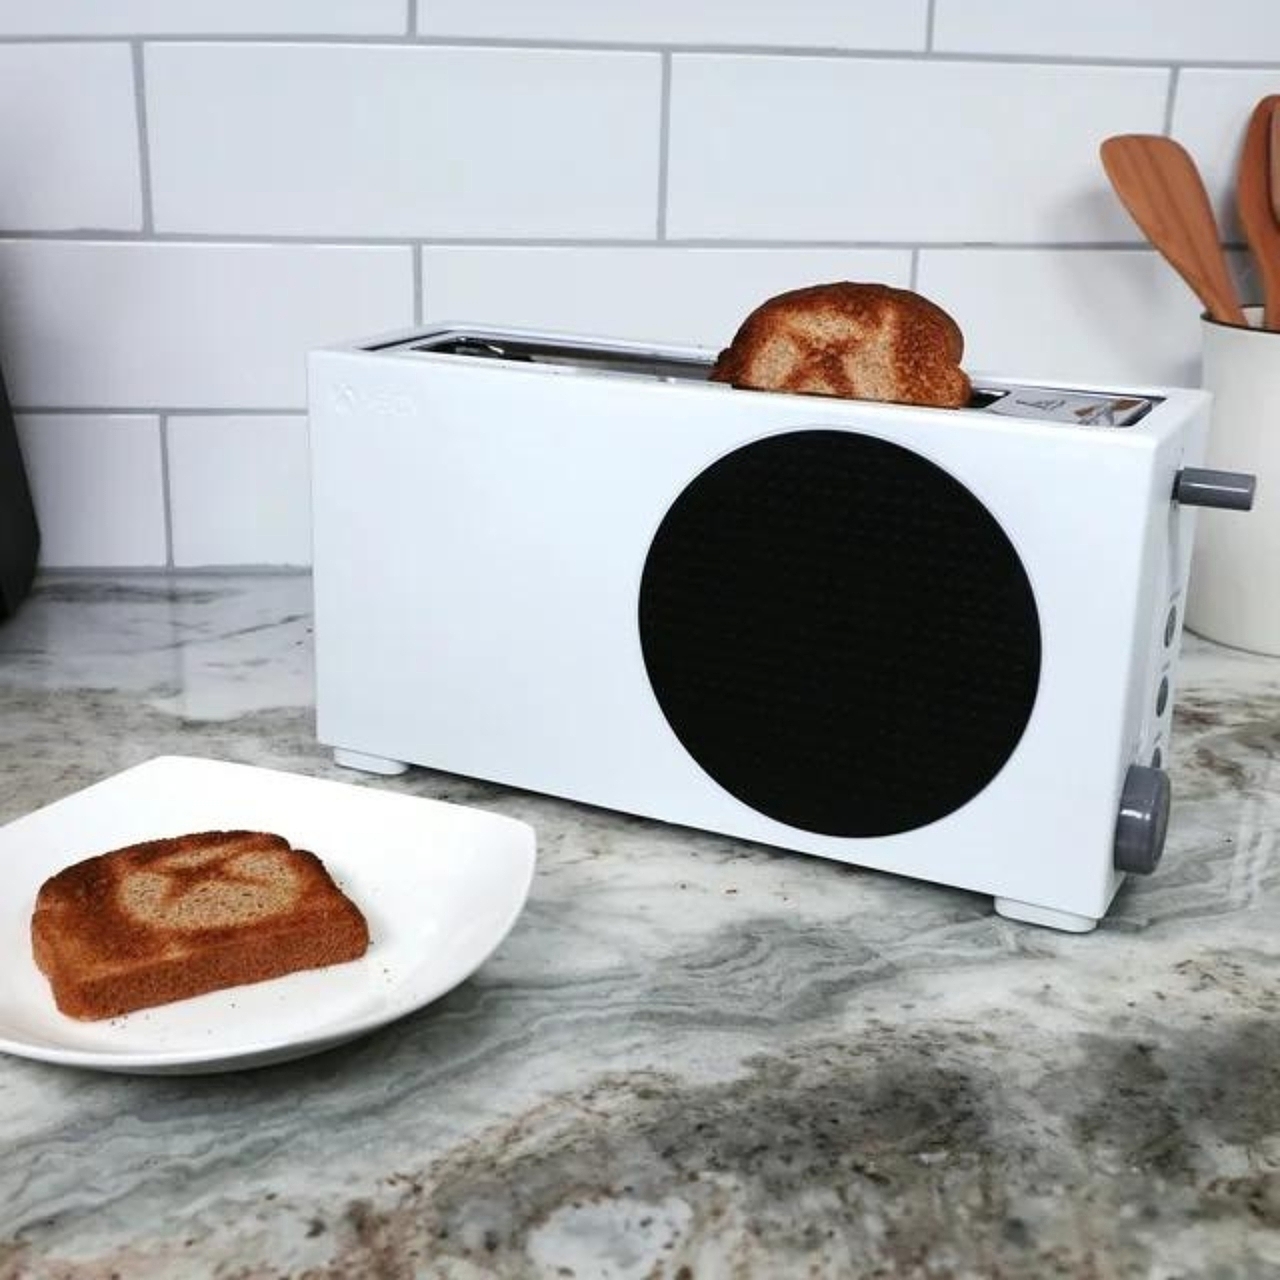 xbox，烤面包机，厨房家电，家用电器，